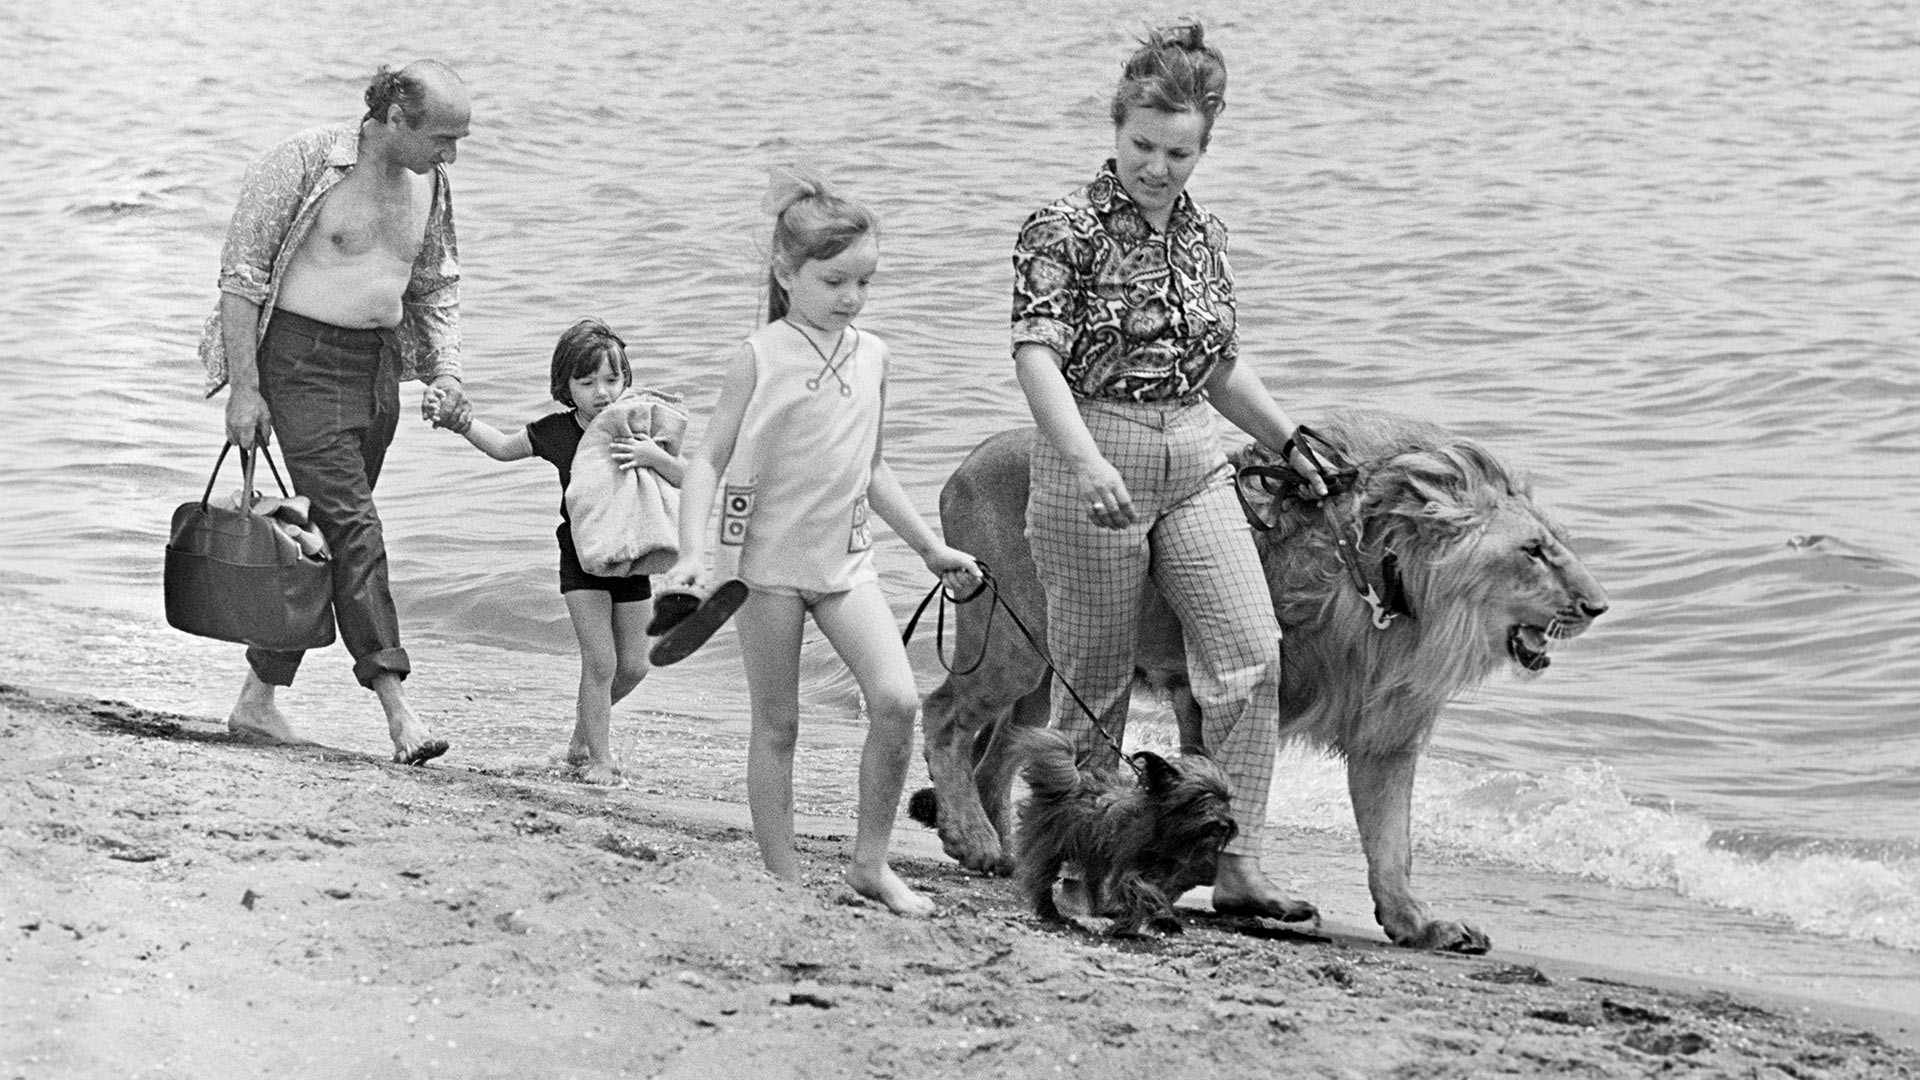 Il leone King con la famiglia Berberov durante una passeggiata in riva al mare, Baku